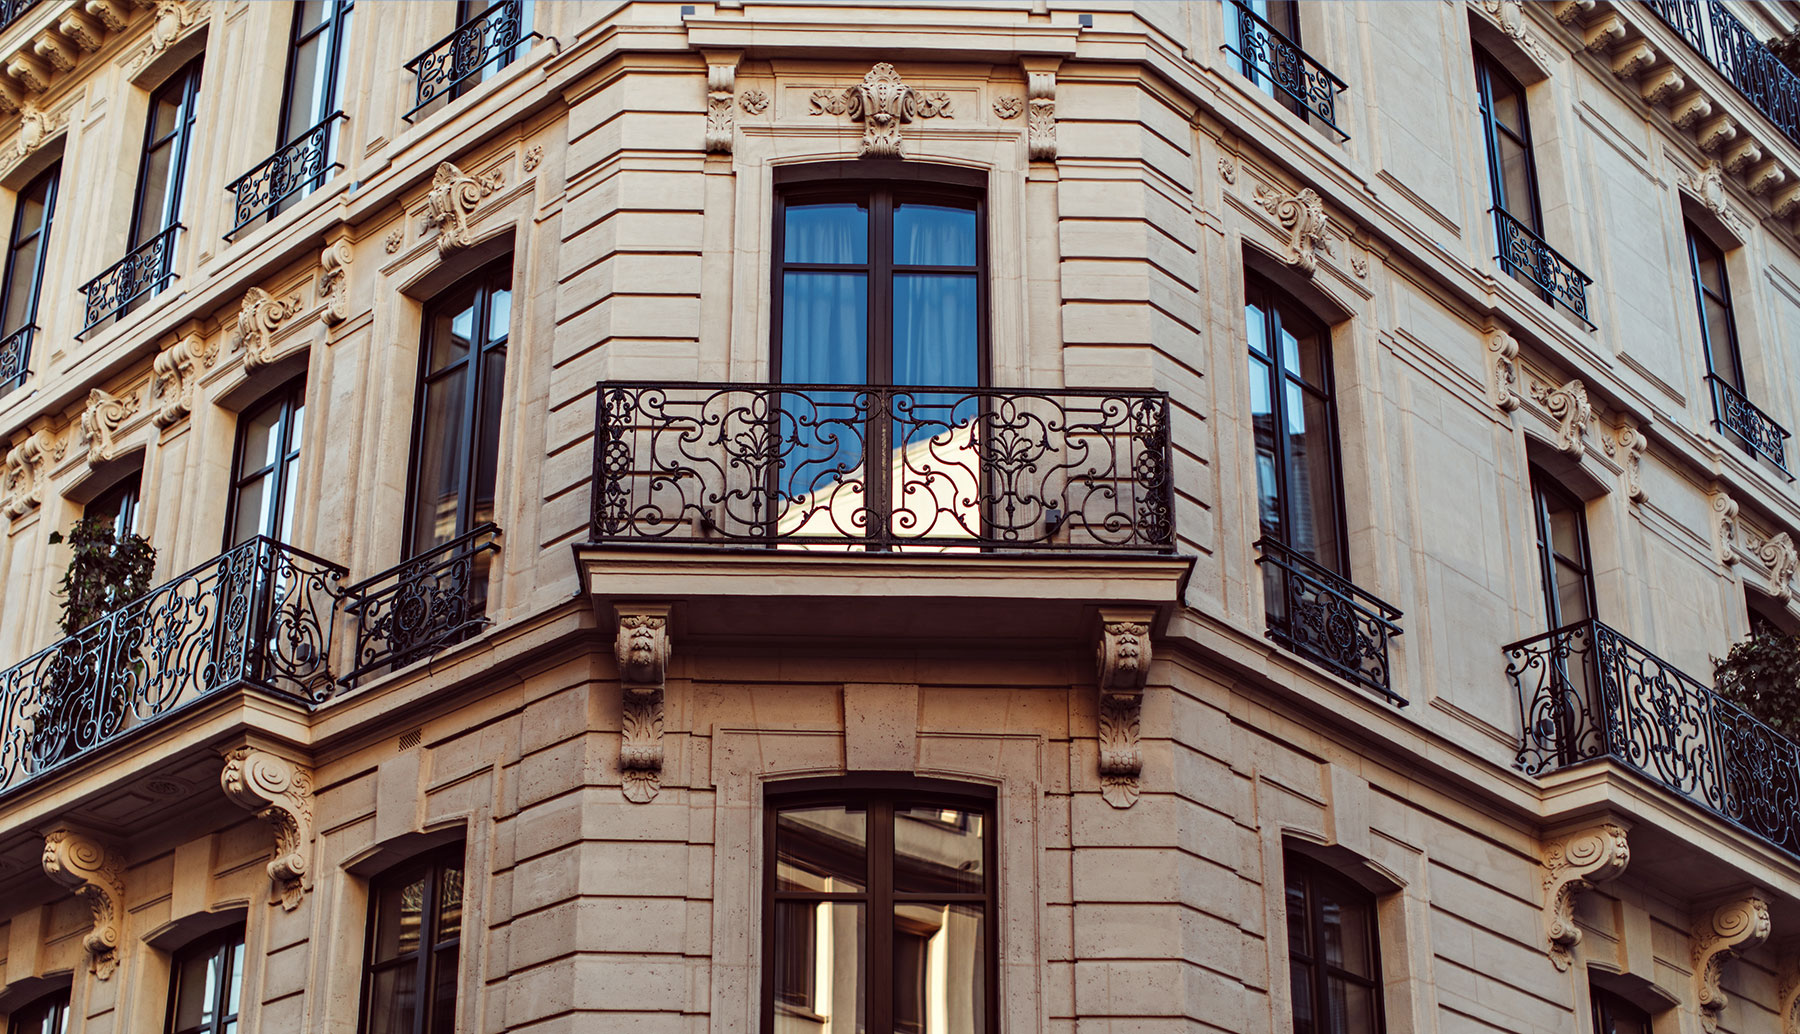 Hotel Monsieur George, Paris. Plume Voyage Magazine #plumevoyage @plumevoyagemagazine @plumevoyage © Benoit Linero